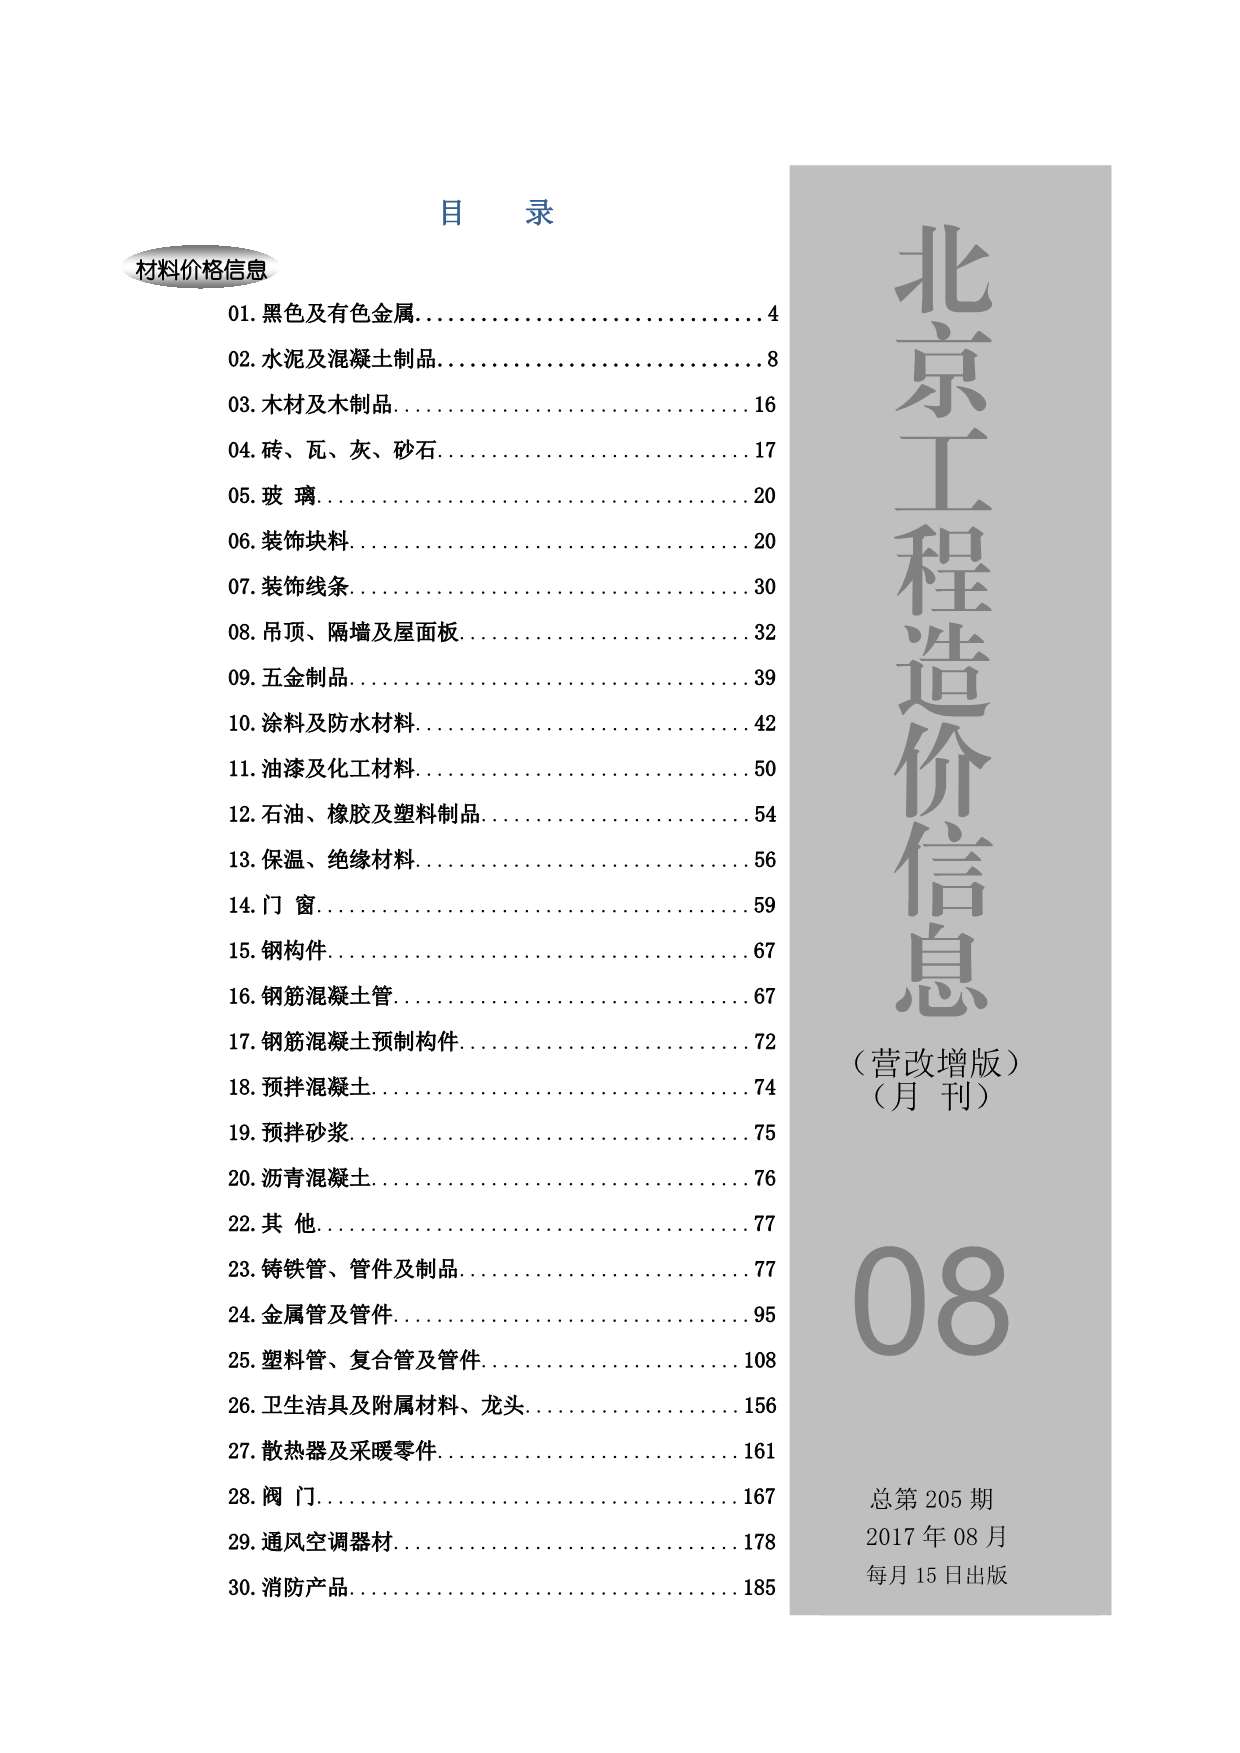 北京市2017年8月工程信息价_北京市信息价期刊PDF扫描件电子版